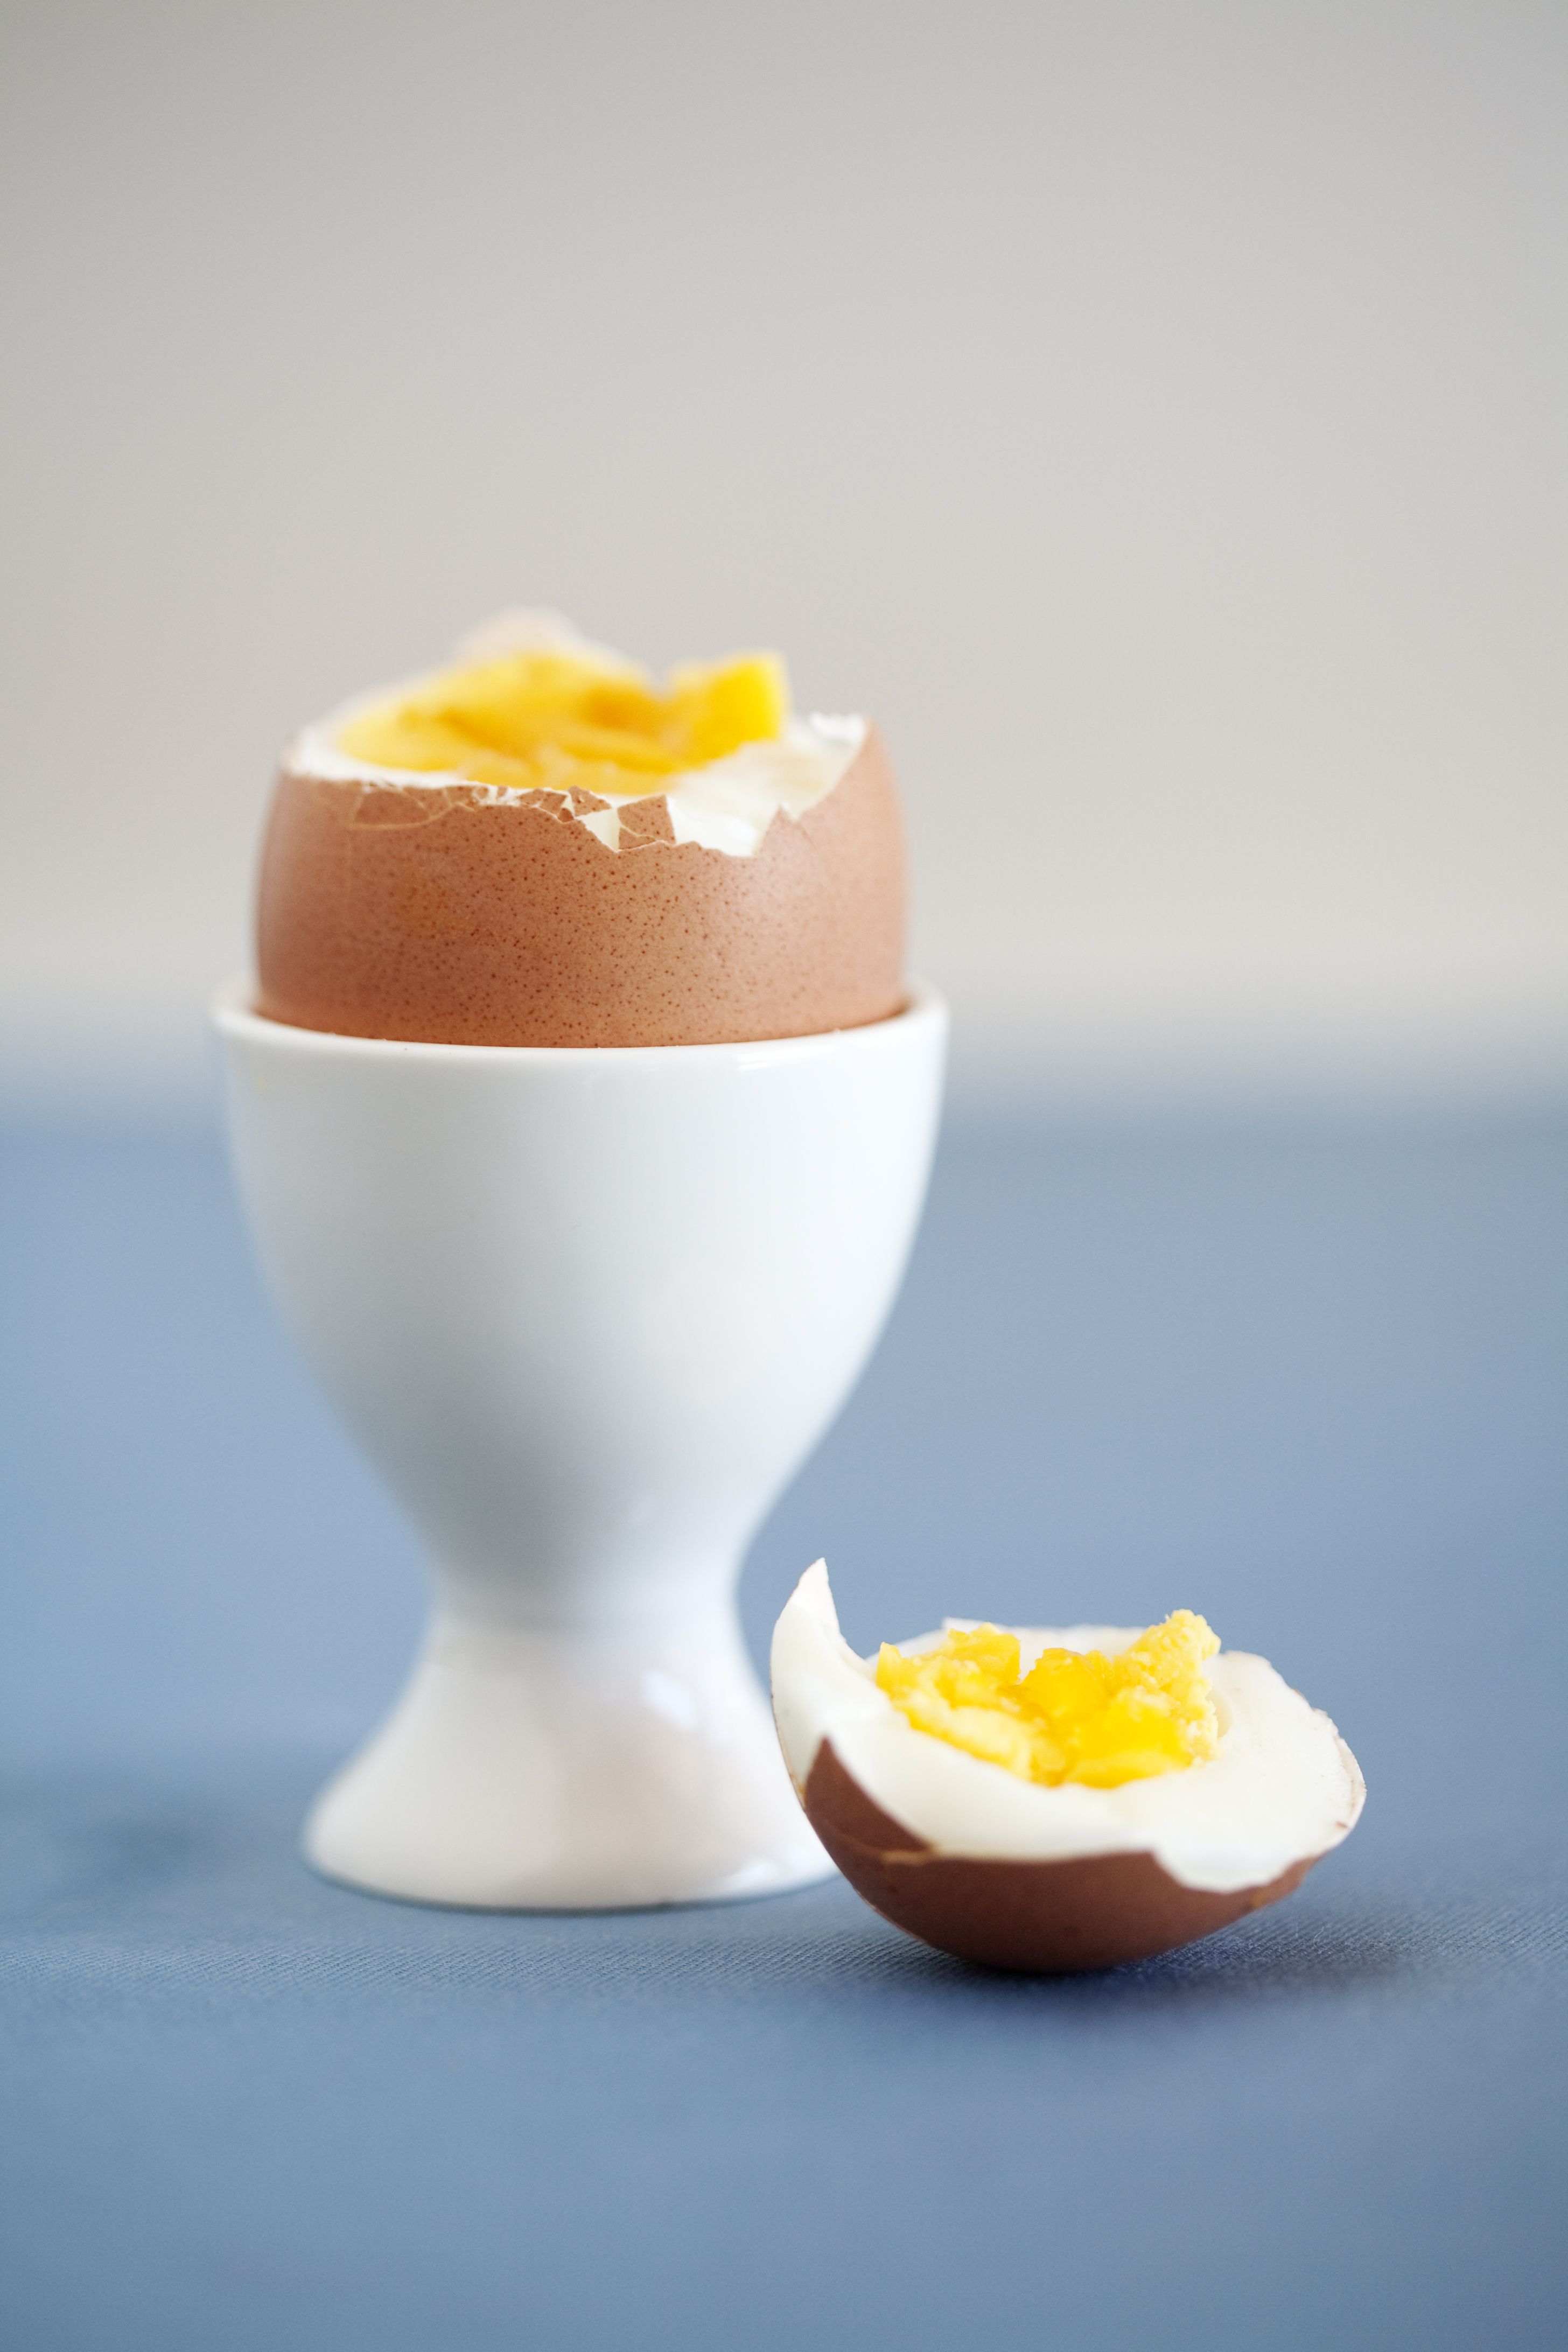 Cocer huevos. Consejos para un huevo cocido perfecto.